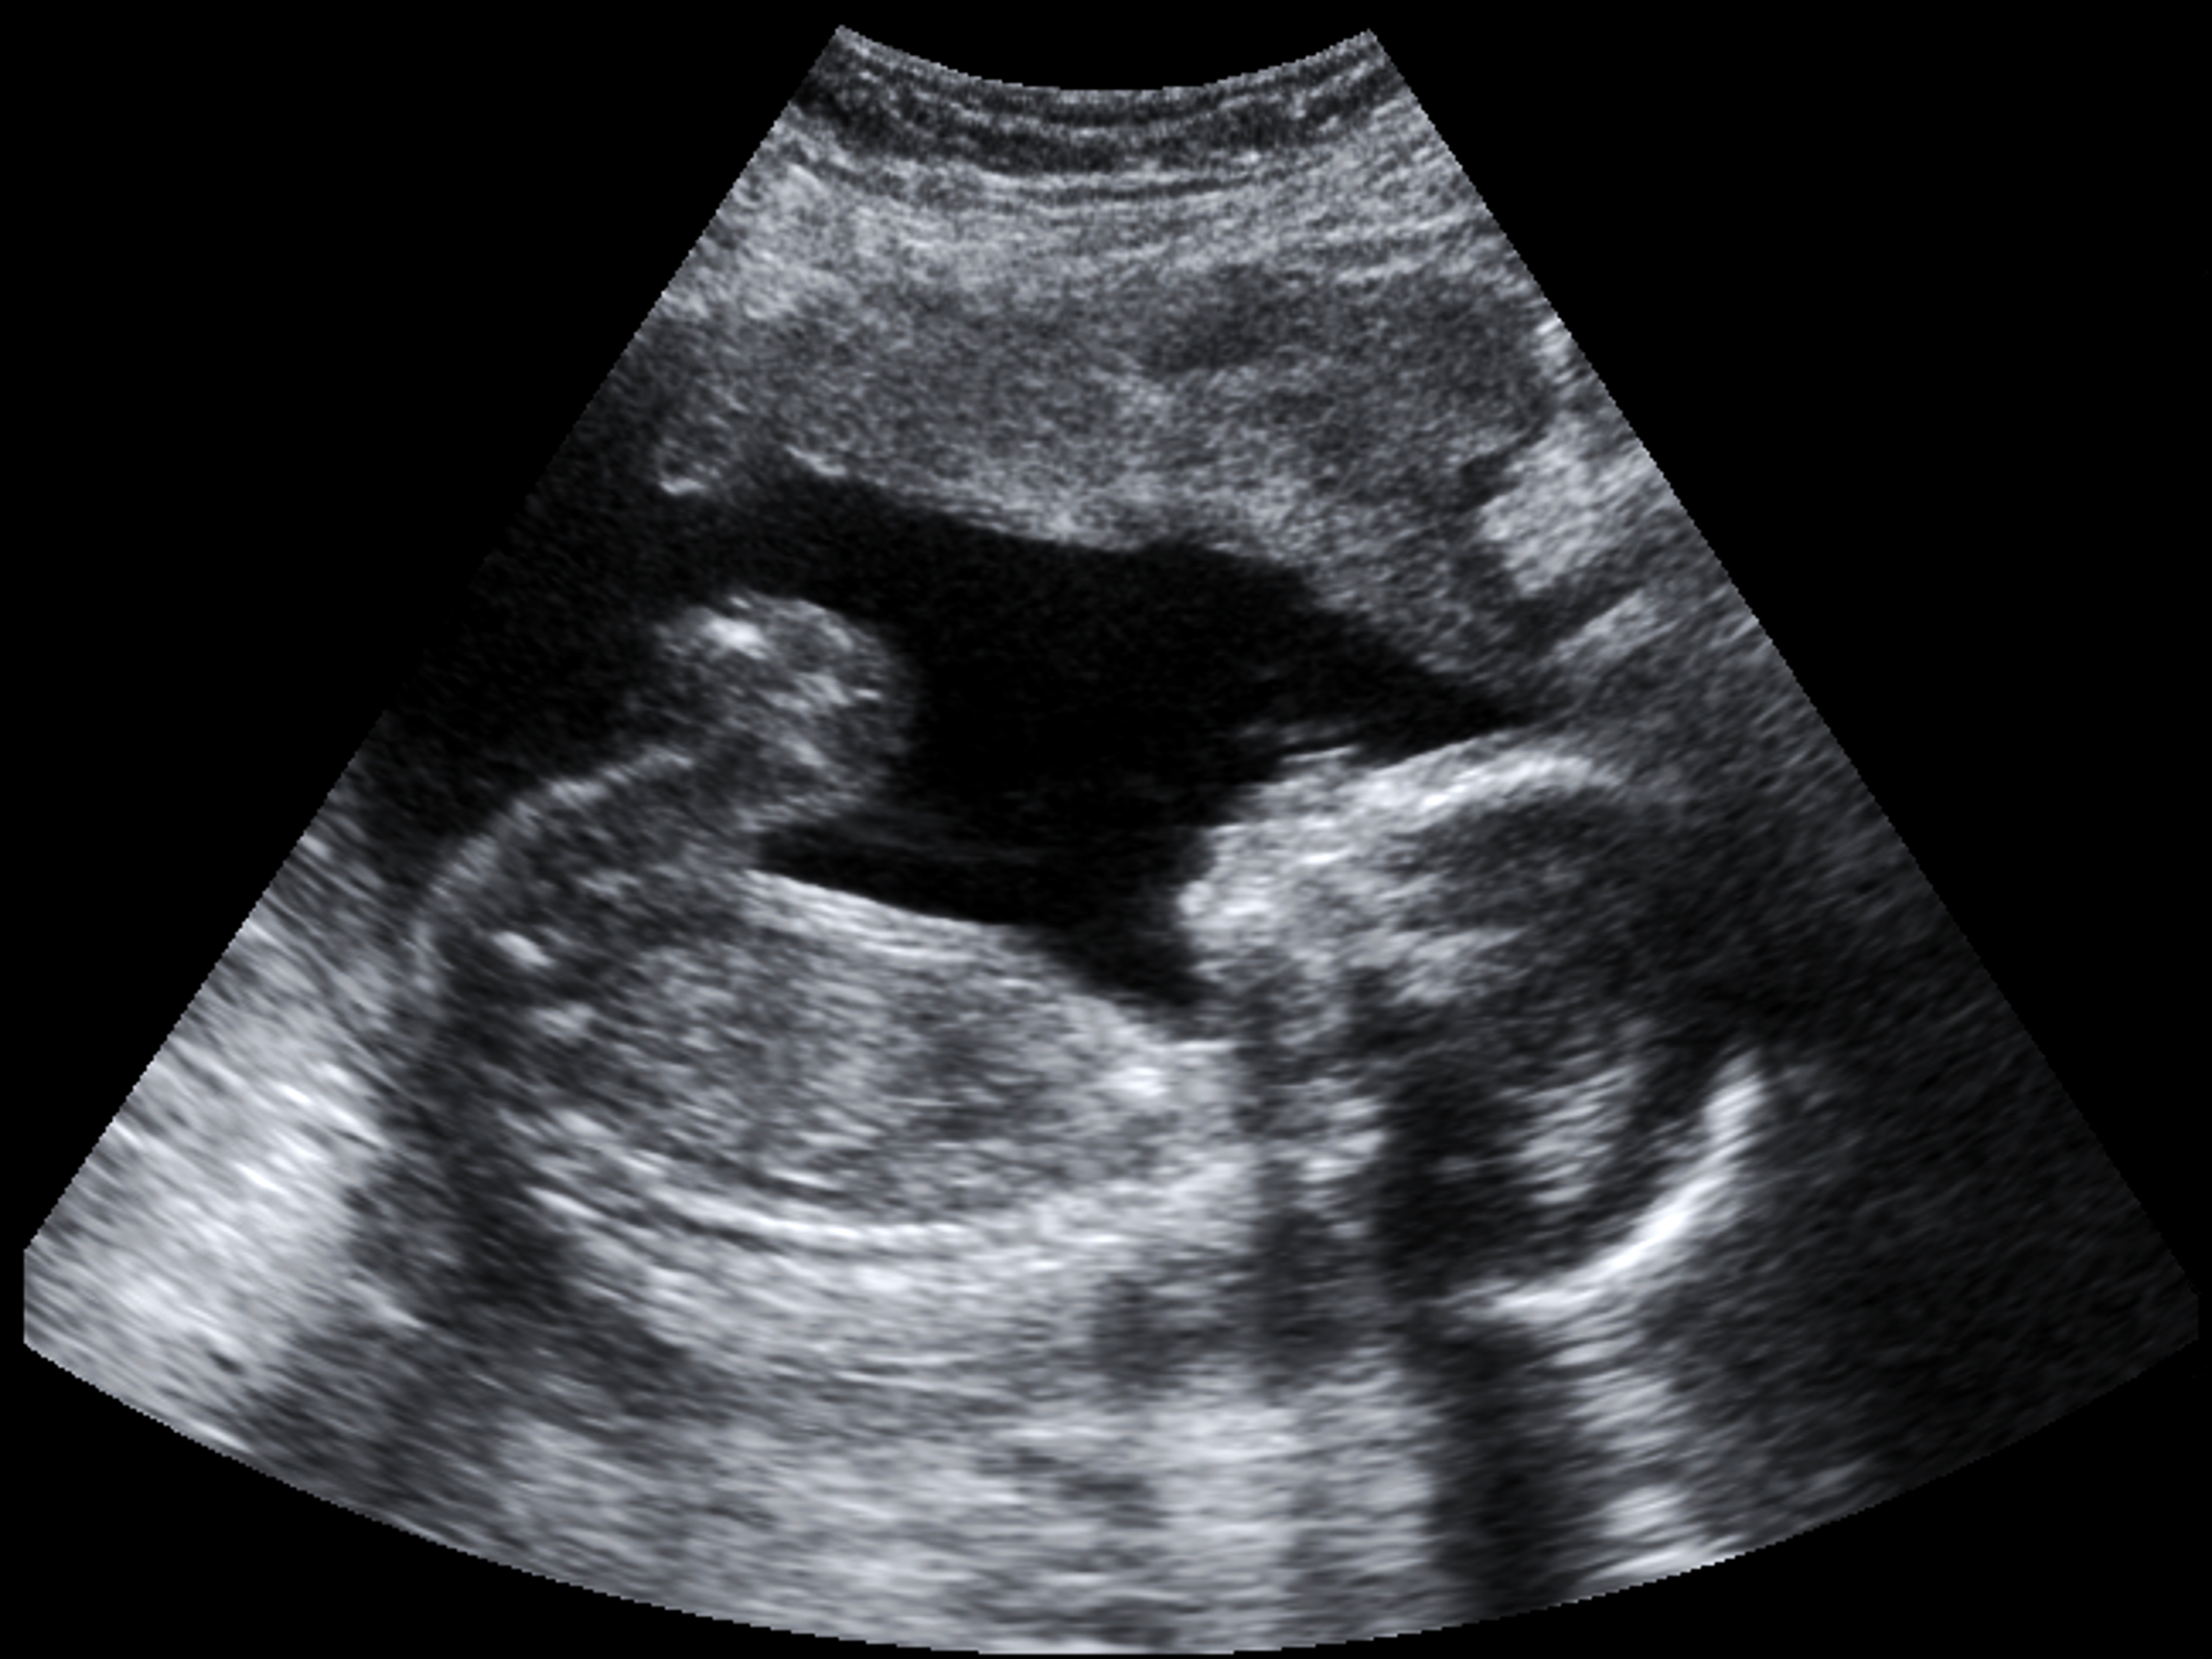 Ultrassom morfológico: Importância, detalhes e análises na gravidez